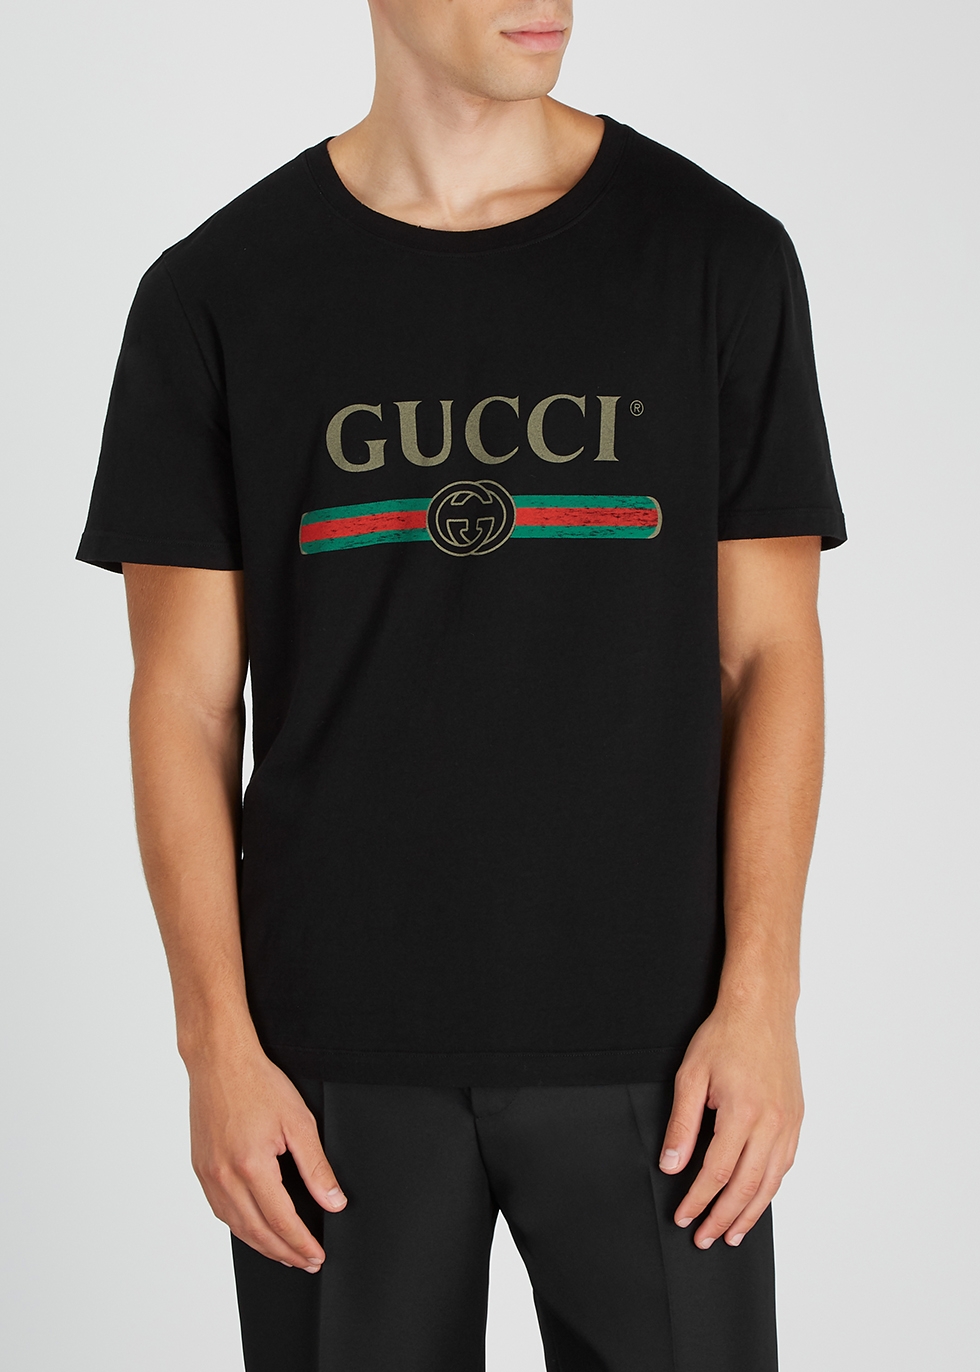 gucci black logo t shirt